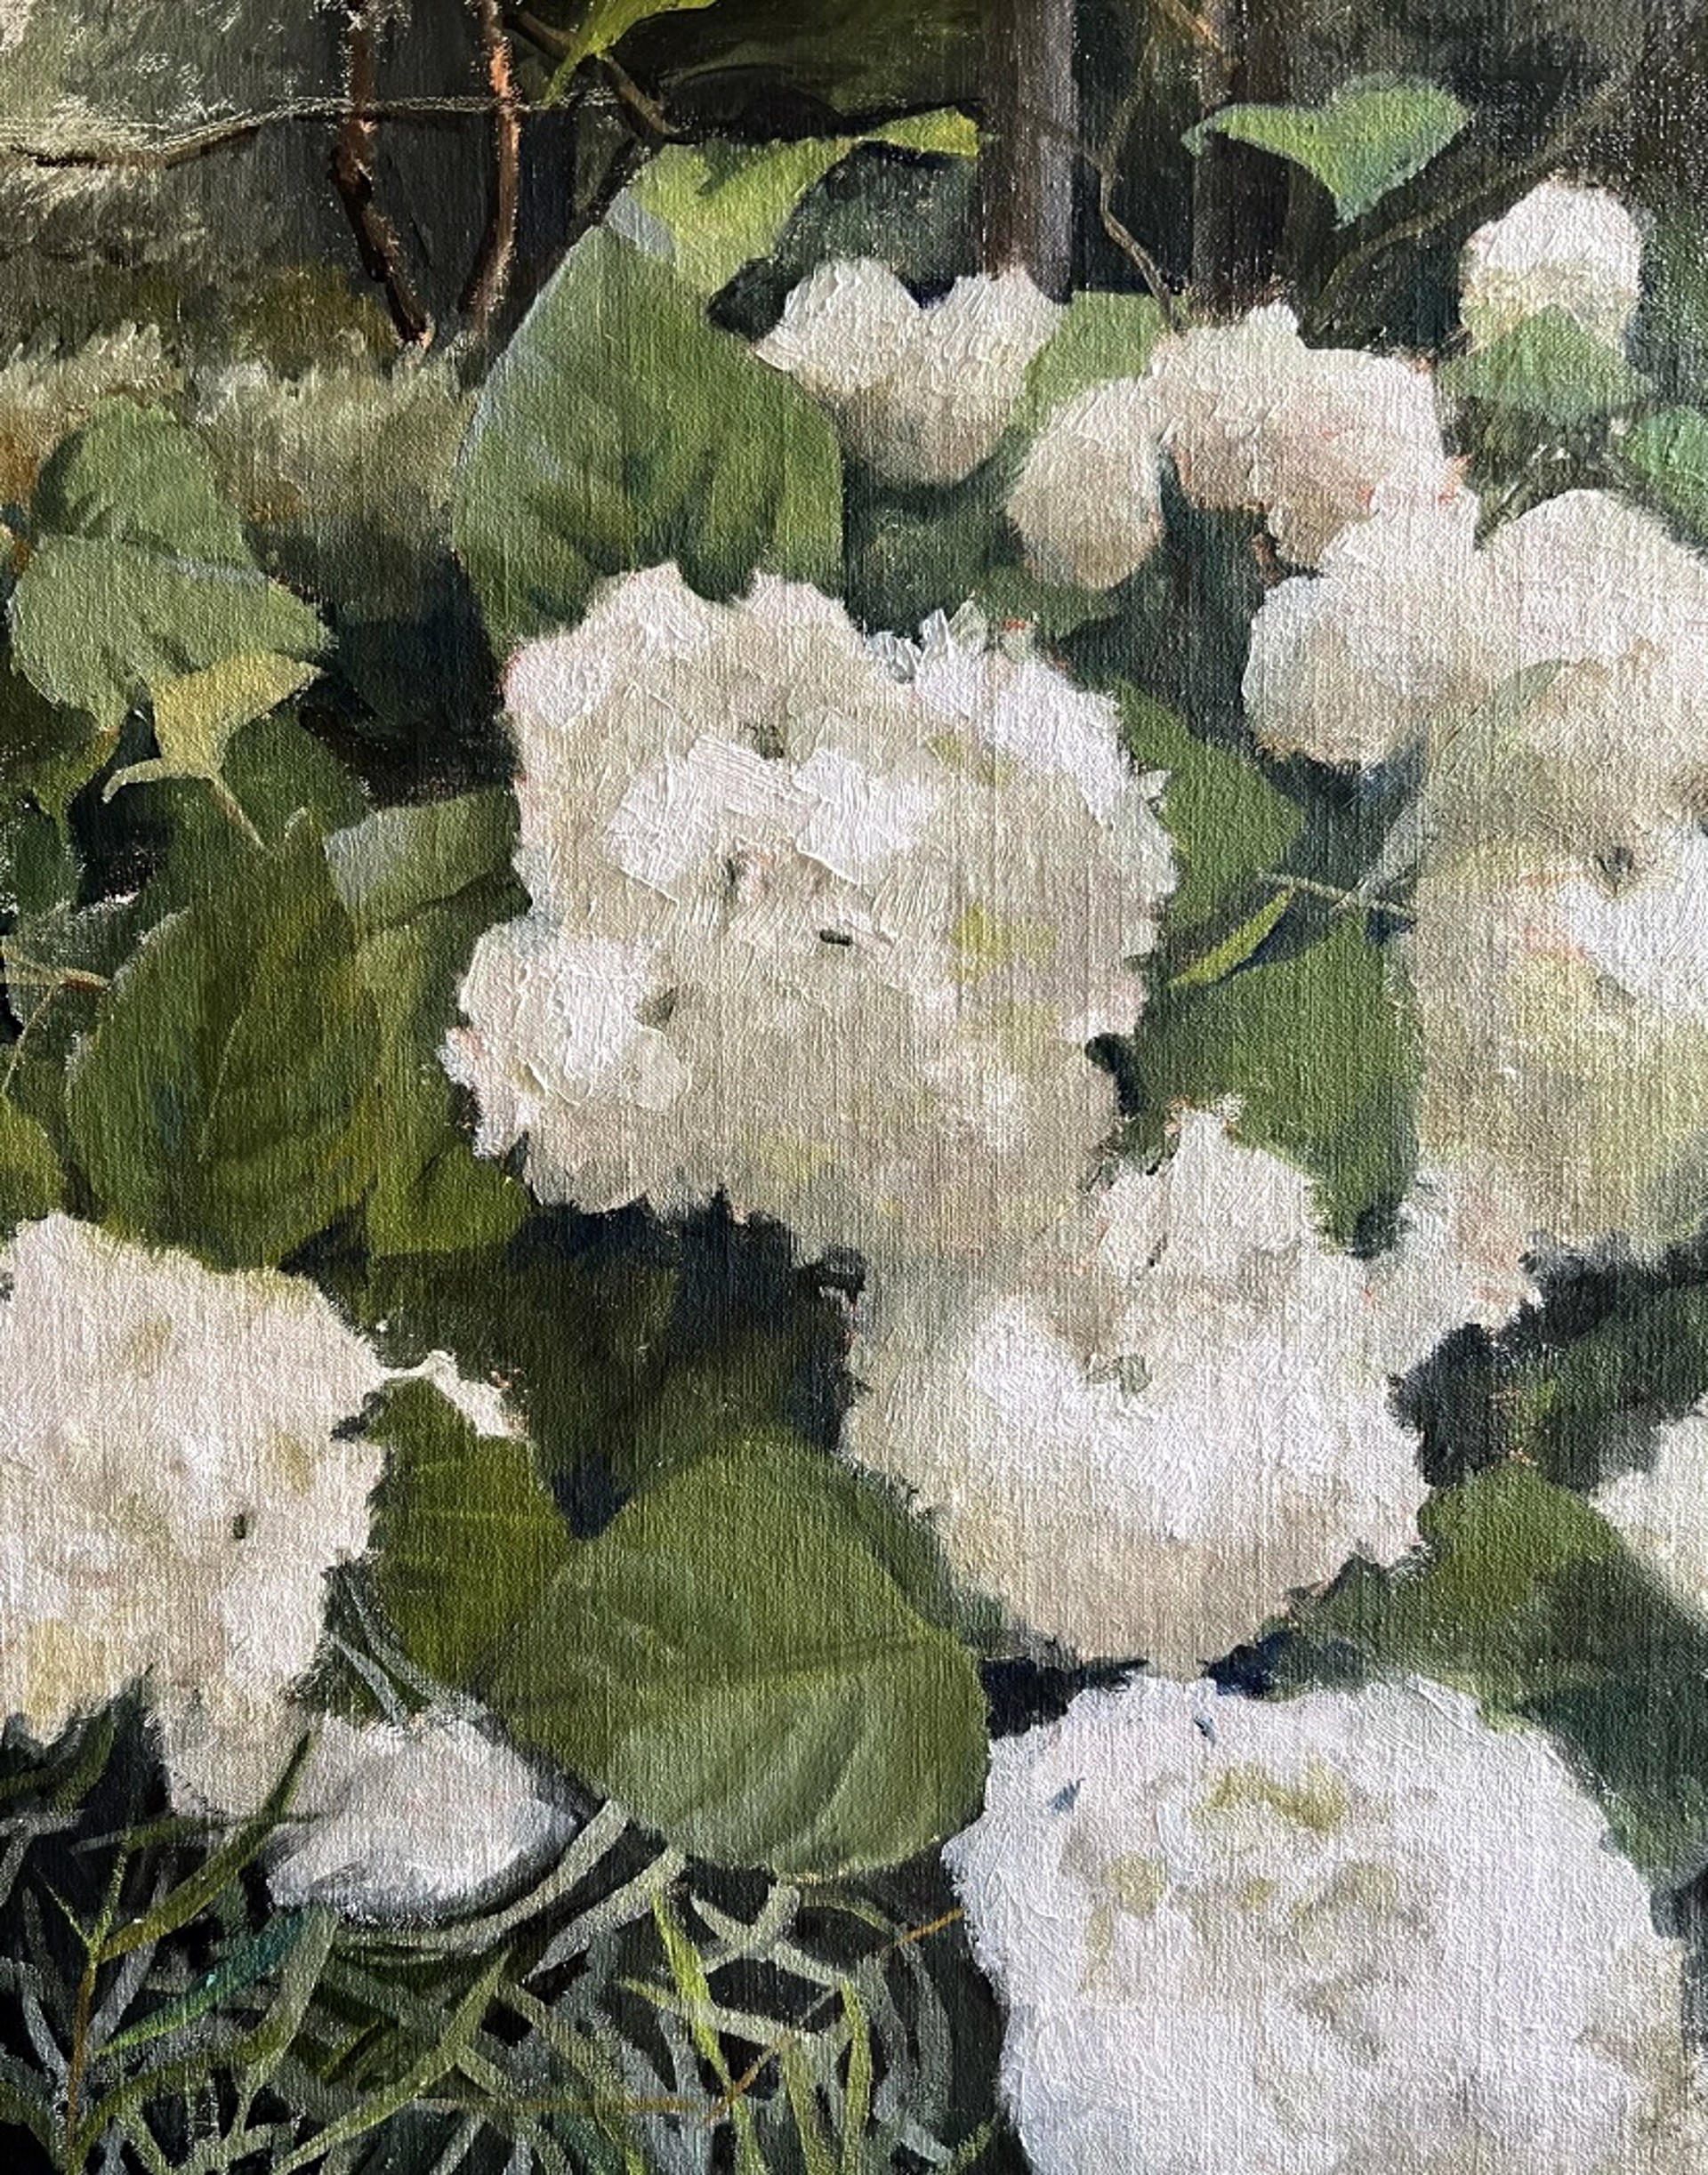 White Hydrangeas by Laura Murphey